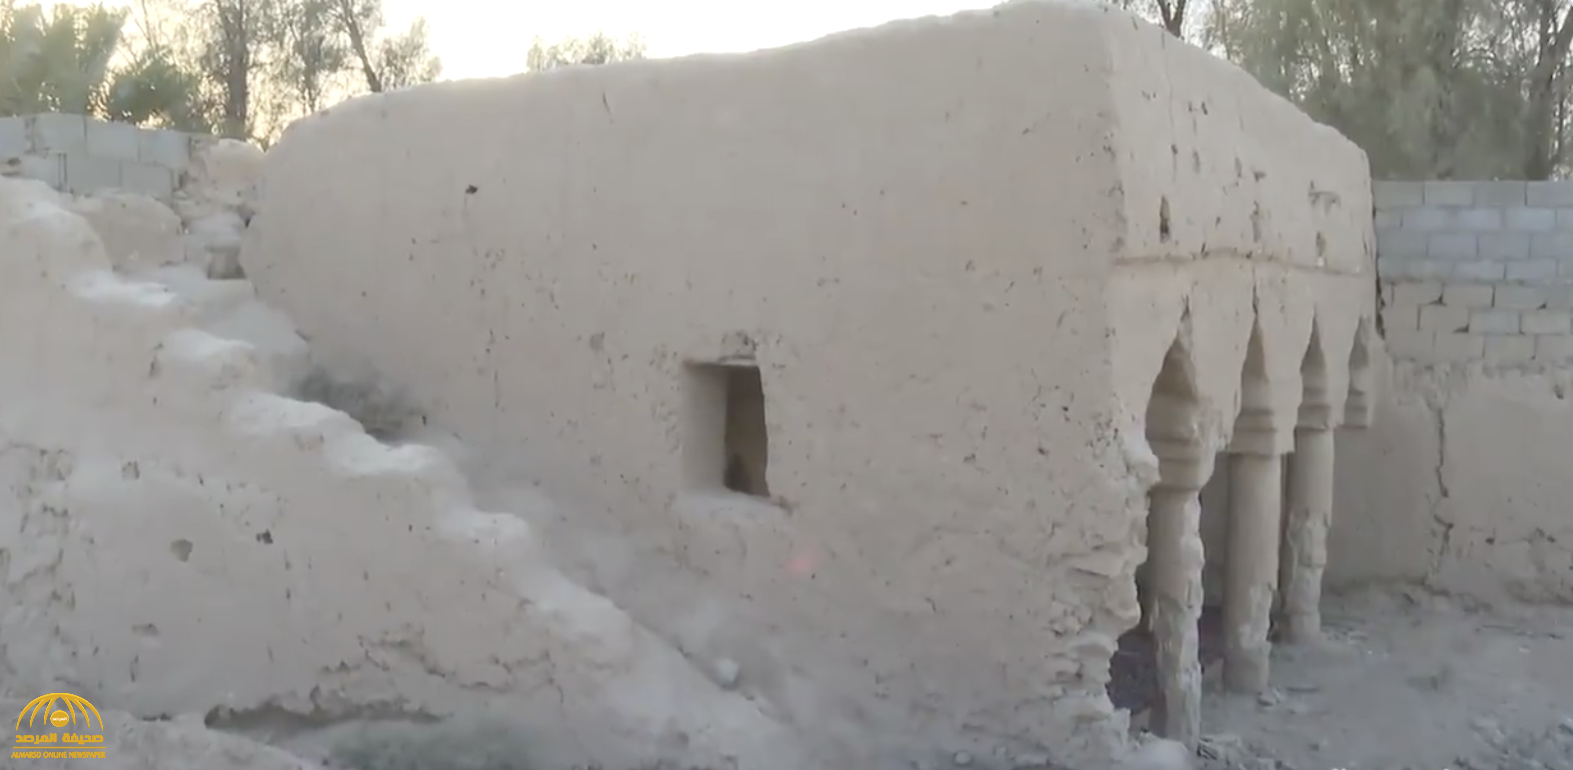 بالفيديو: مواطن يتفاجأ بتعدي رجل أعمال على أرض مسجد عمره 200 عام بالرياض